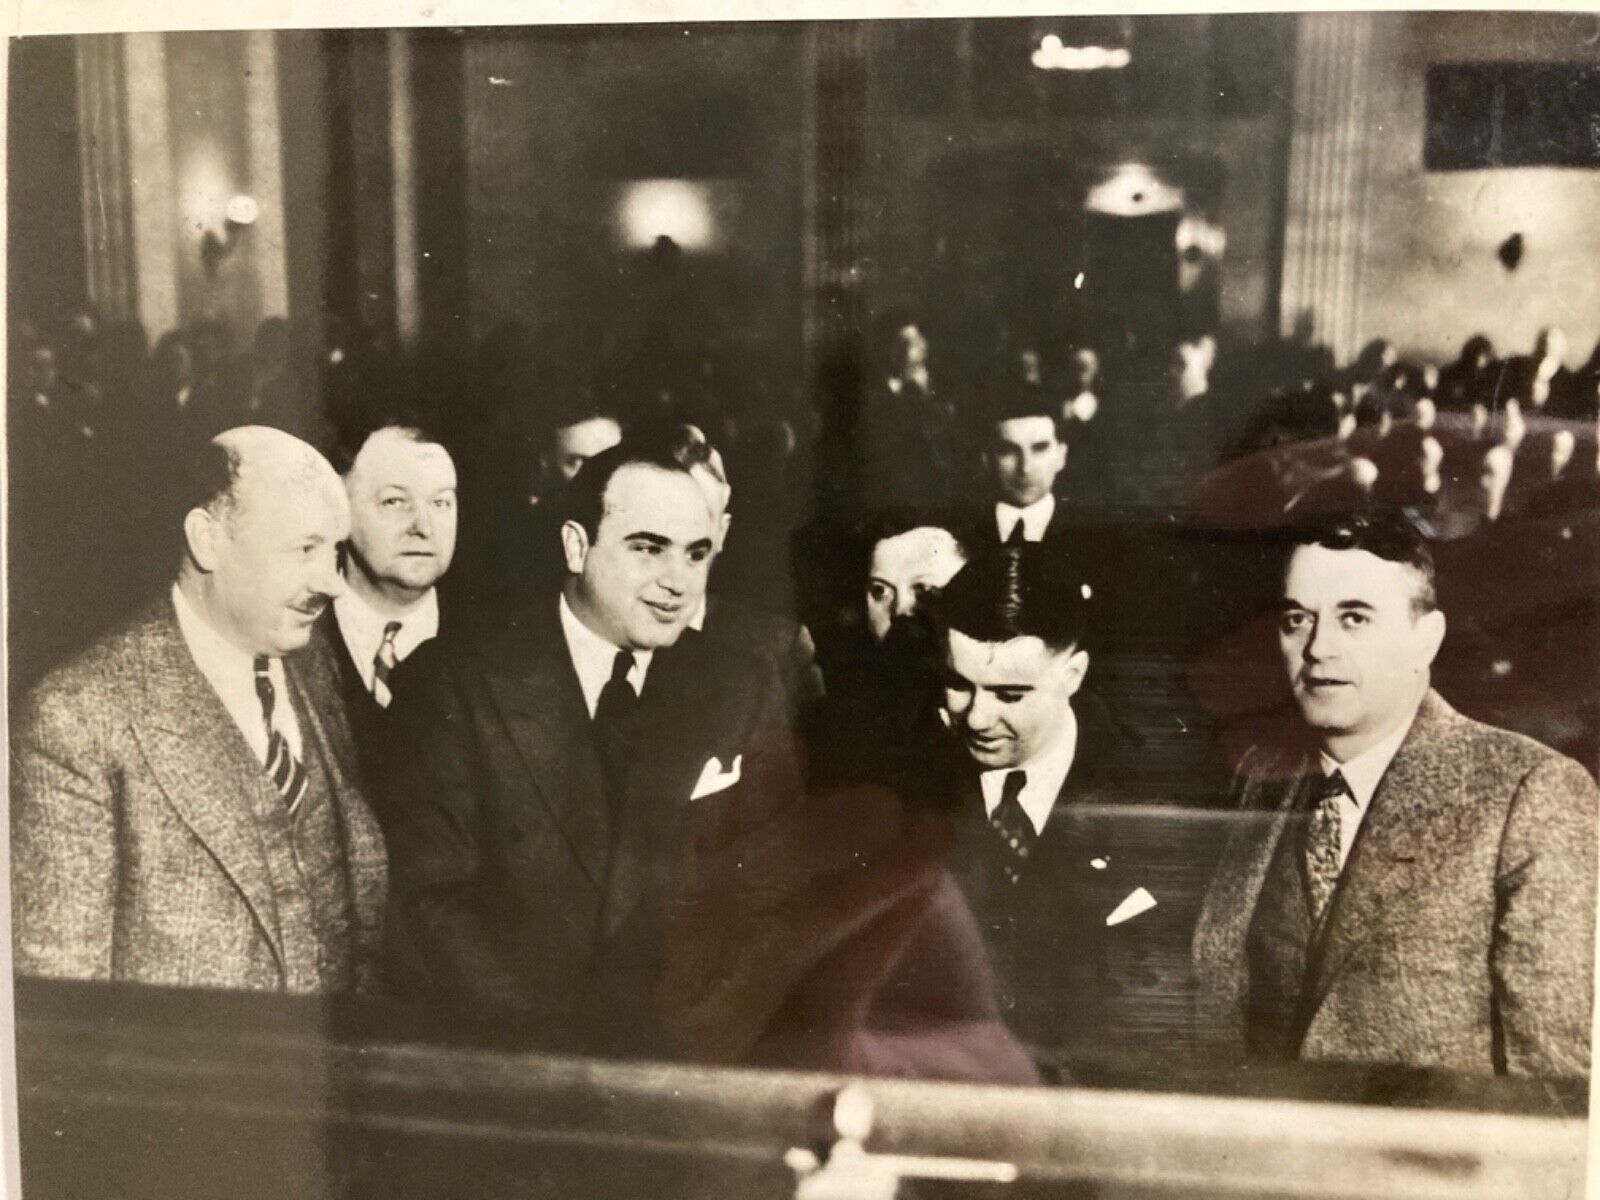 c 1931 Press Photo of Mobster Mafia Chicago Crime Boss Al Capone at Trial